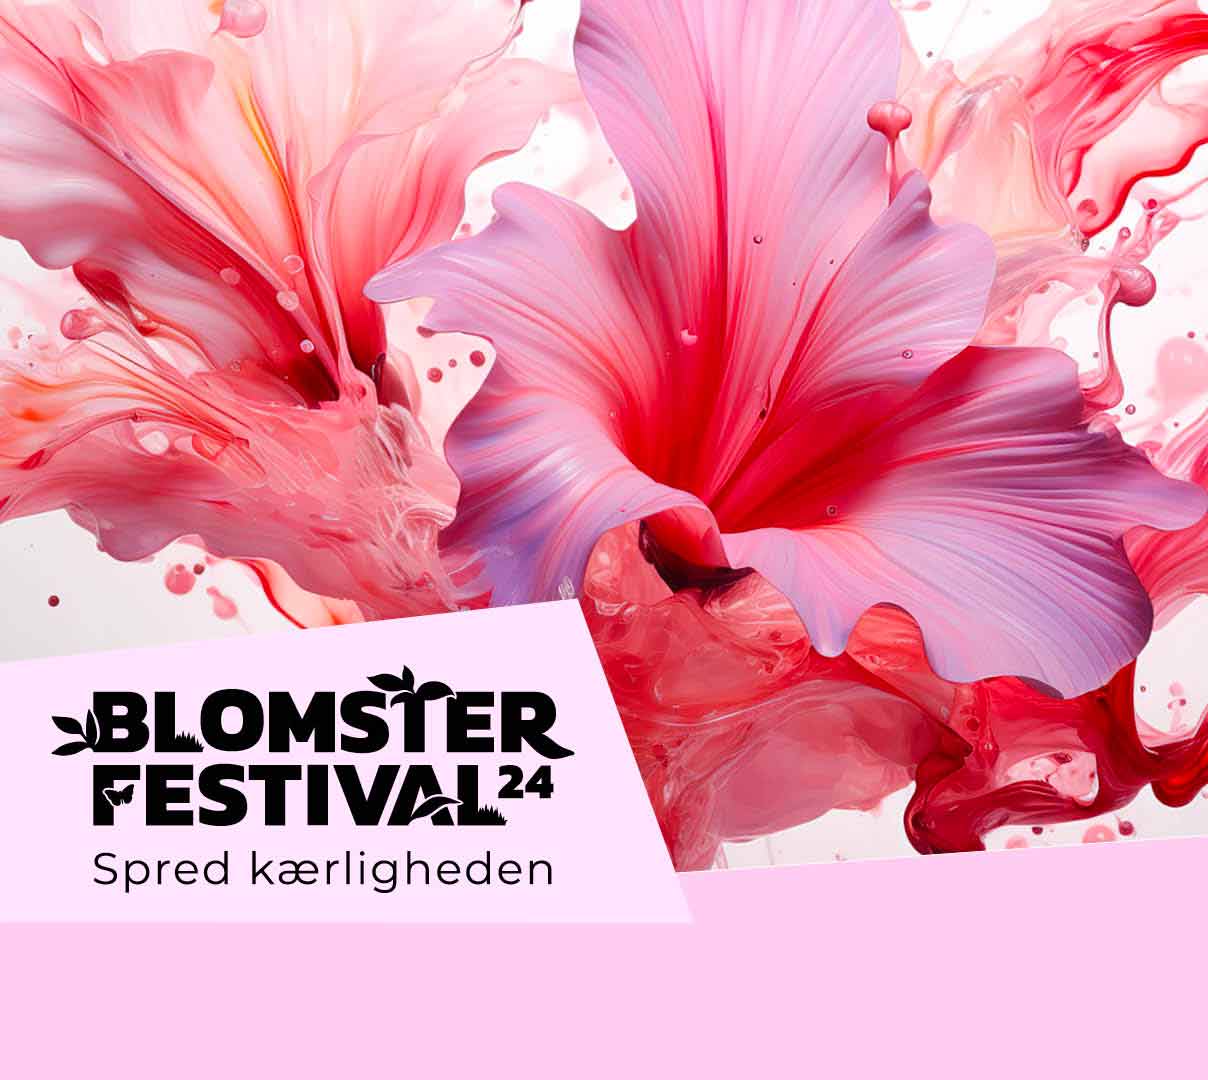 Blomsterfestival program